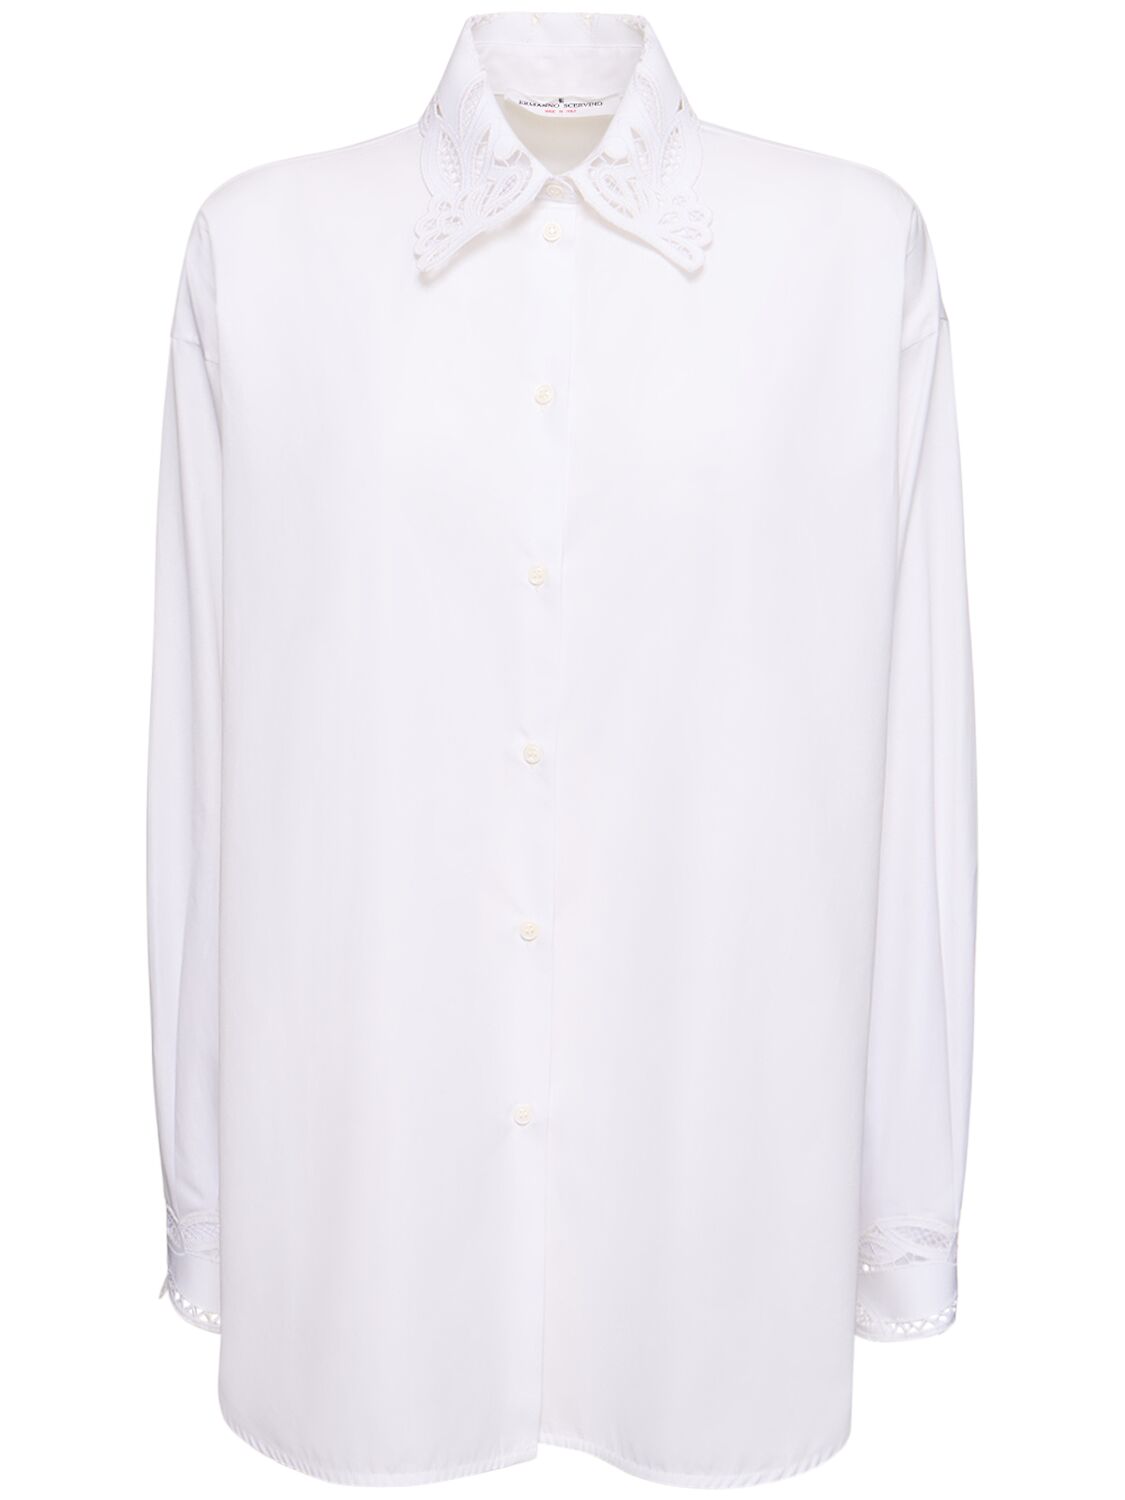 Ermanno Scervino Embroidered Cotton Shirt In White